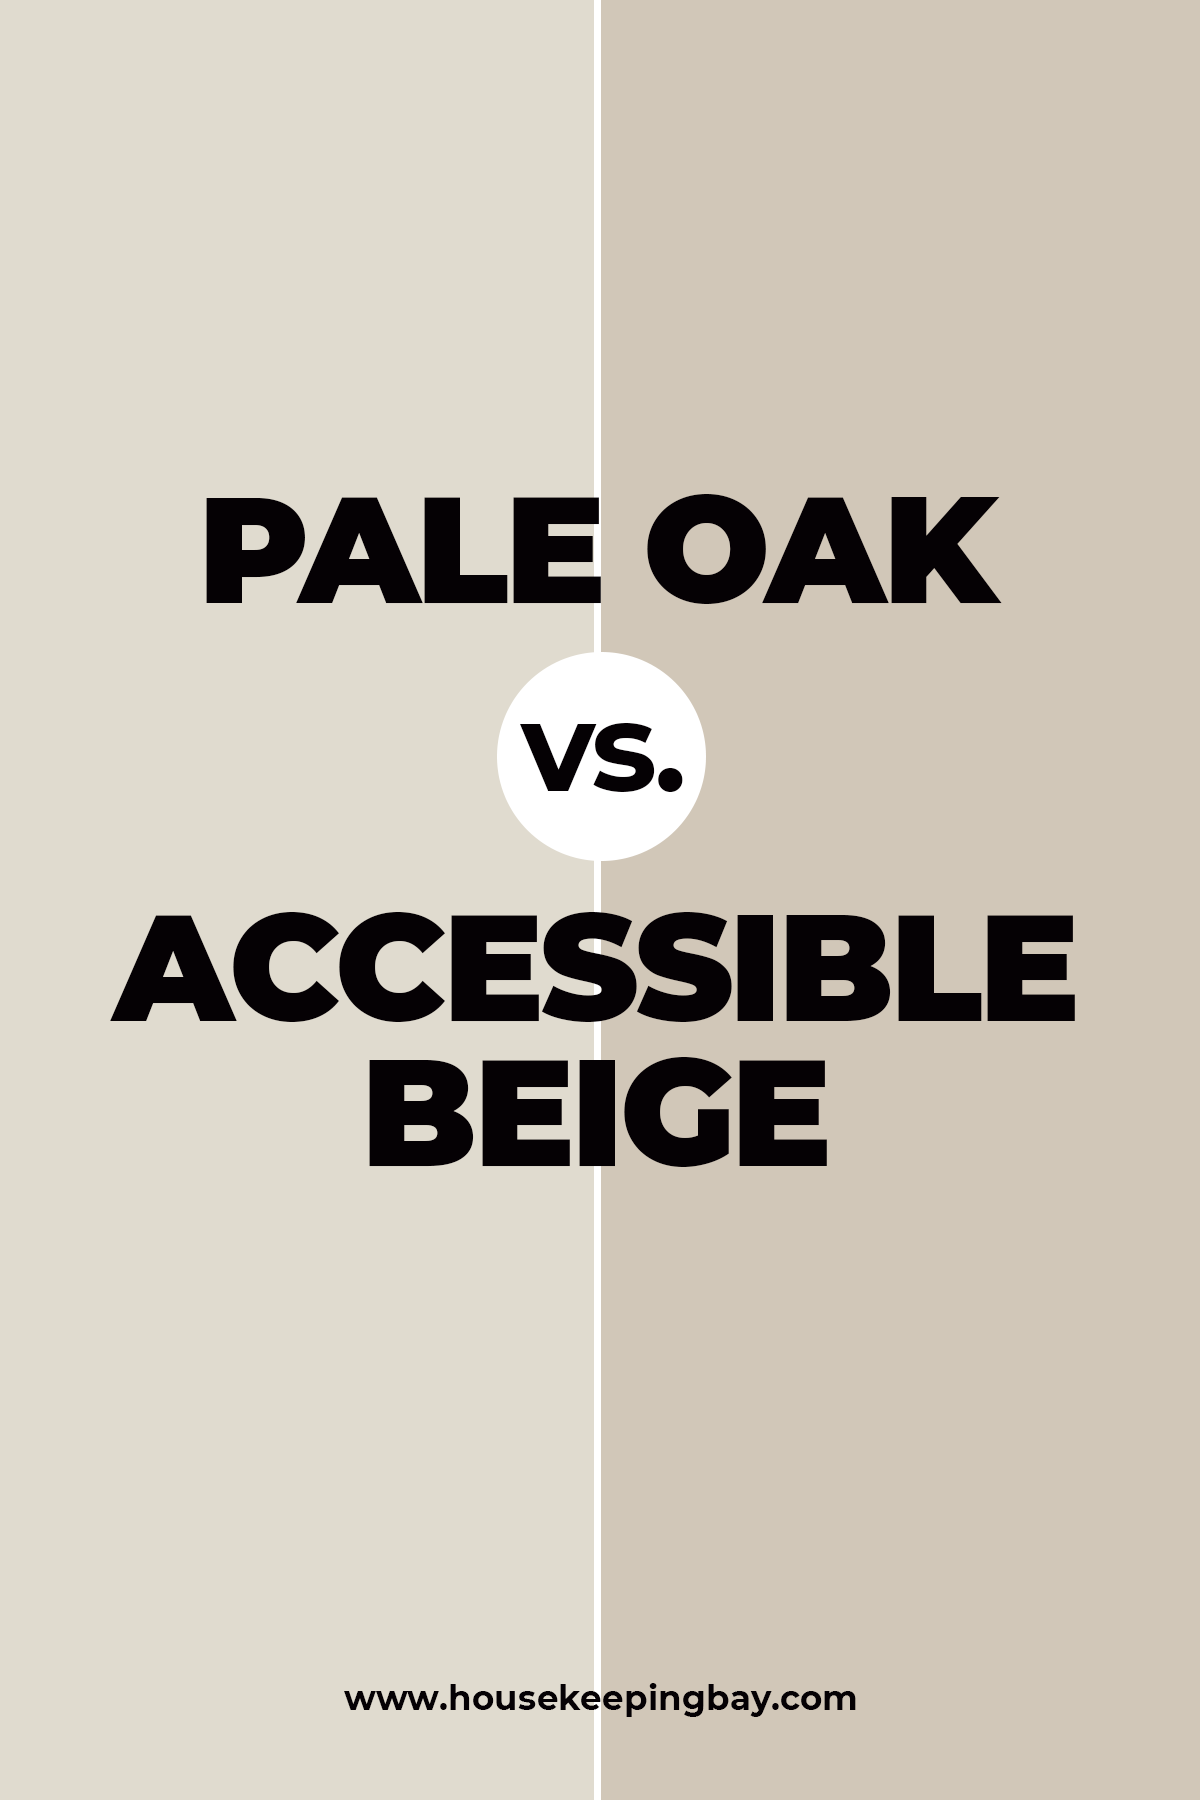 Pale Oak vs. Accessible Beige